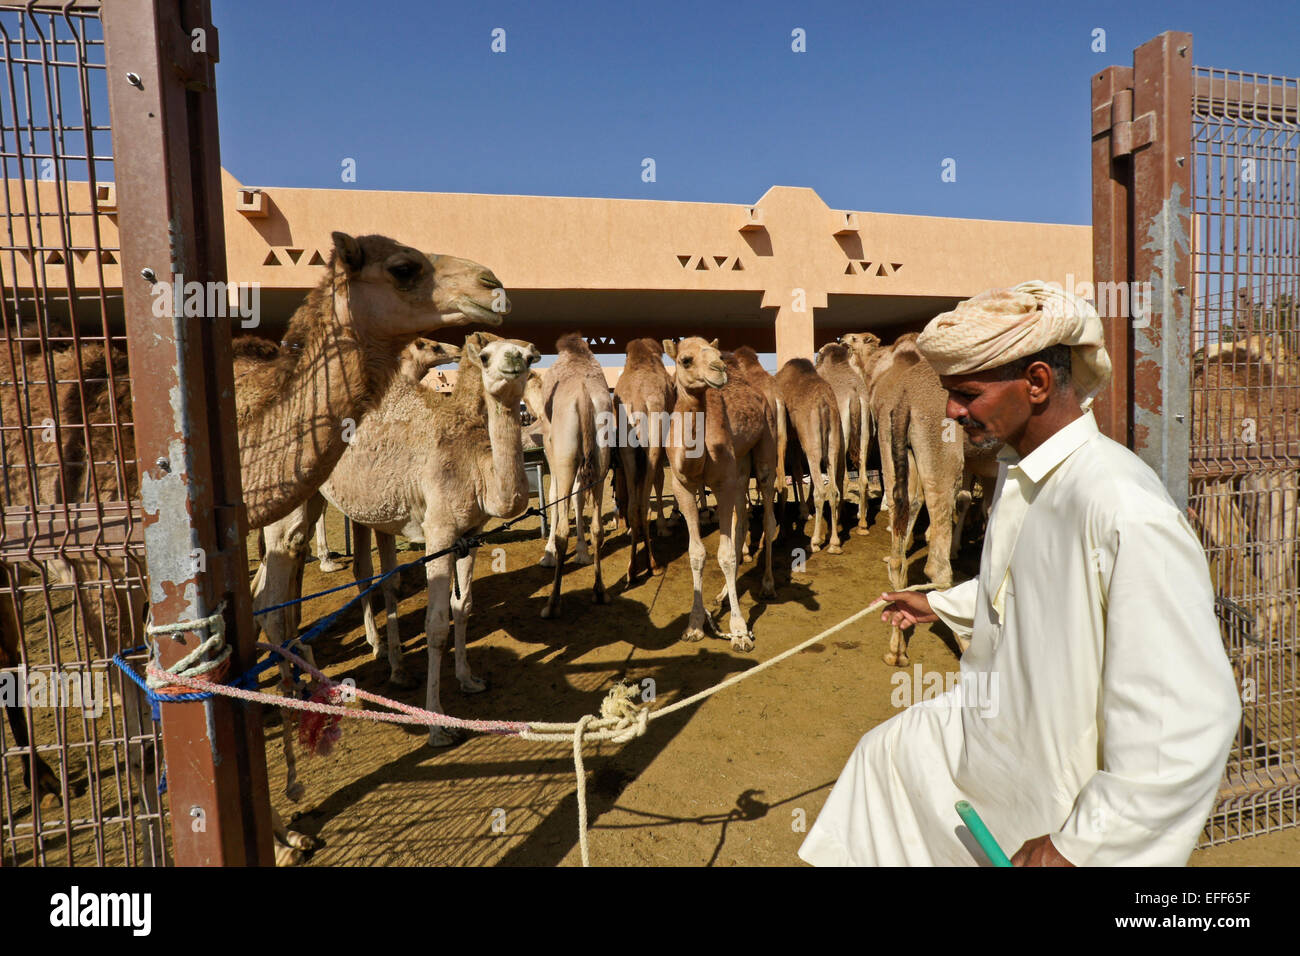 Mann verkaufte Kamele für Fleisch bei Camel vermarkten, Al Ain, Abu Dhabi, Vereinigte Arabische Emirate Stockfoto